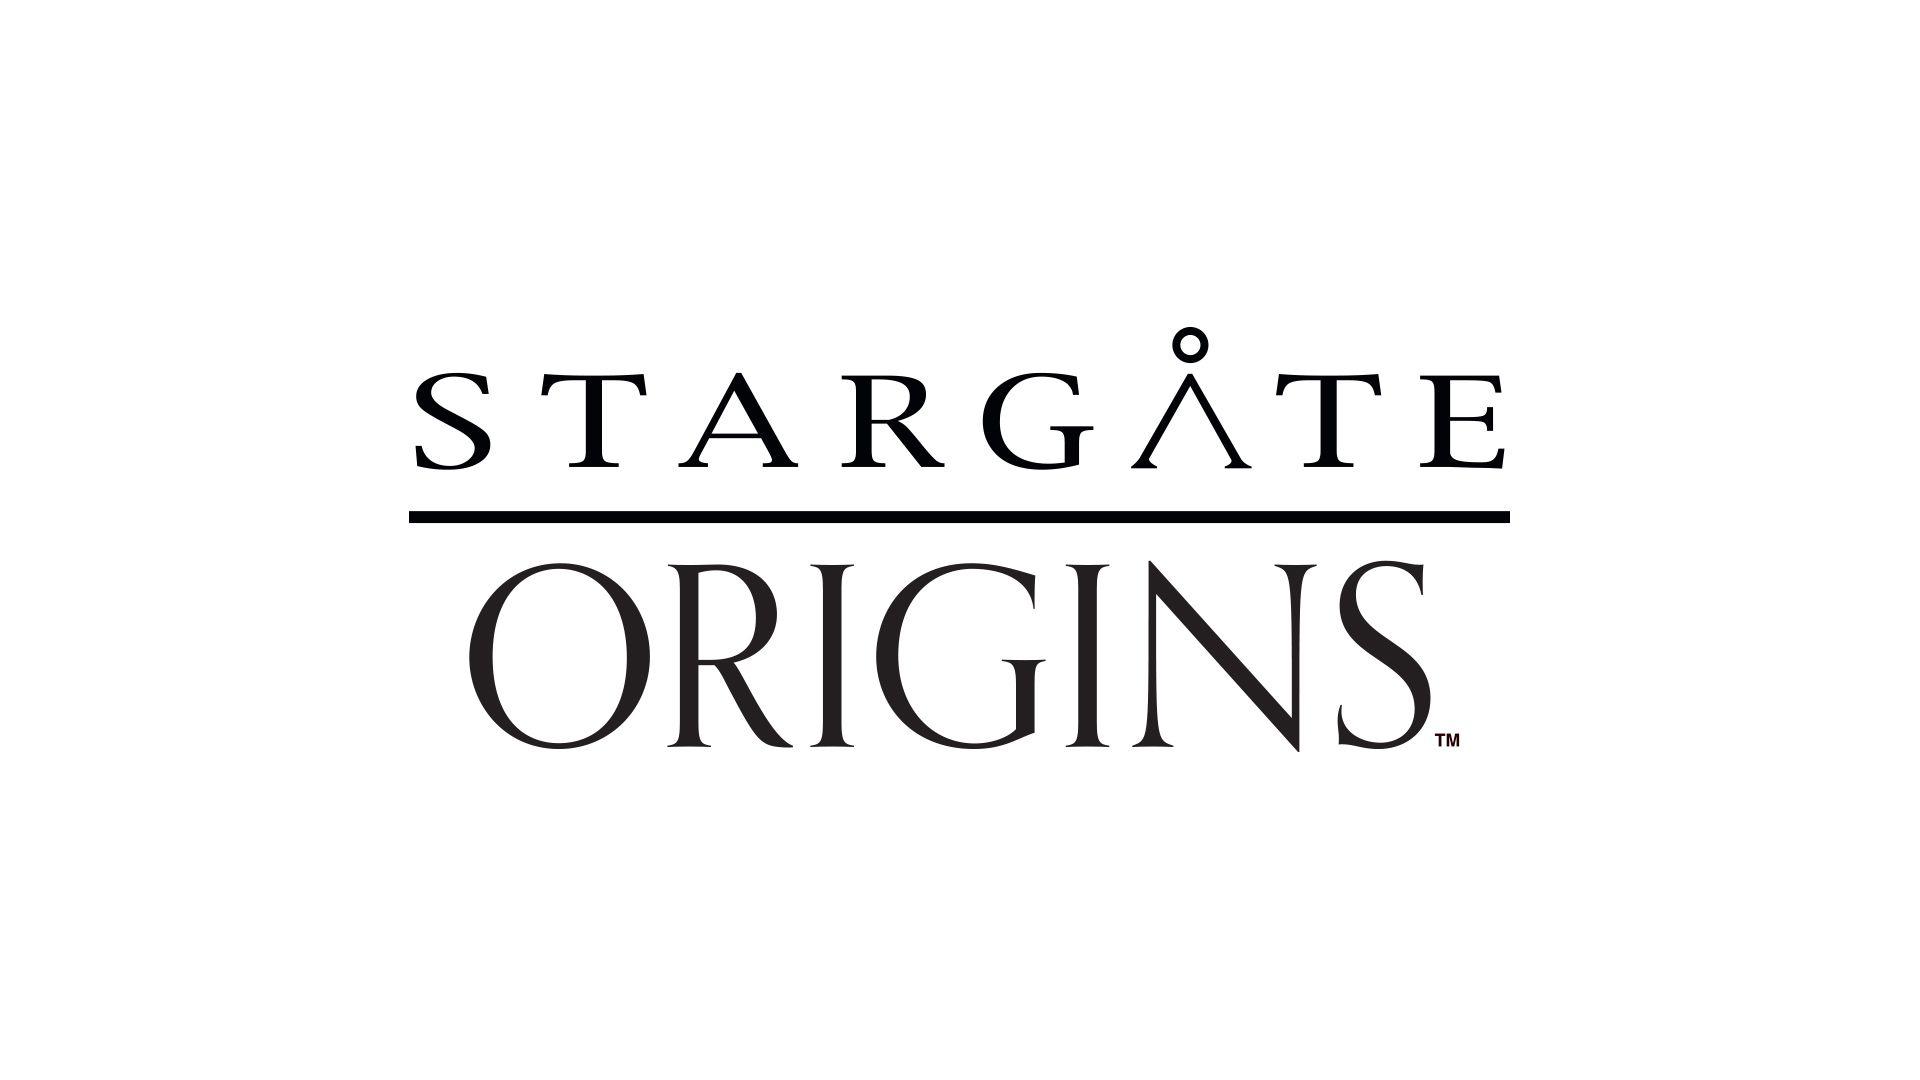 Origins Logo - Stargate Origins Logo